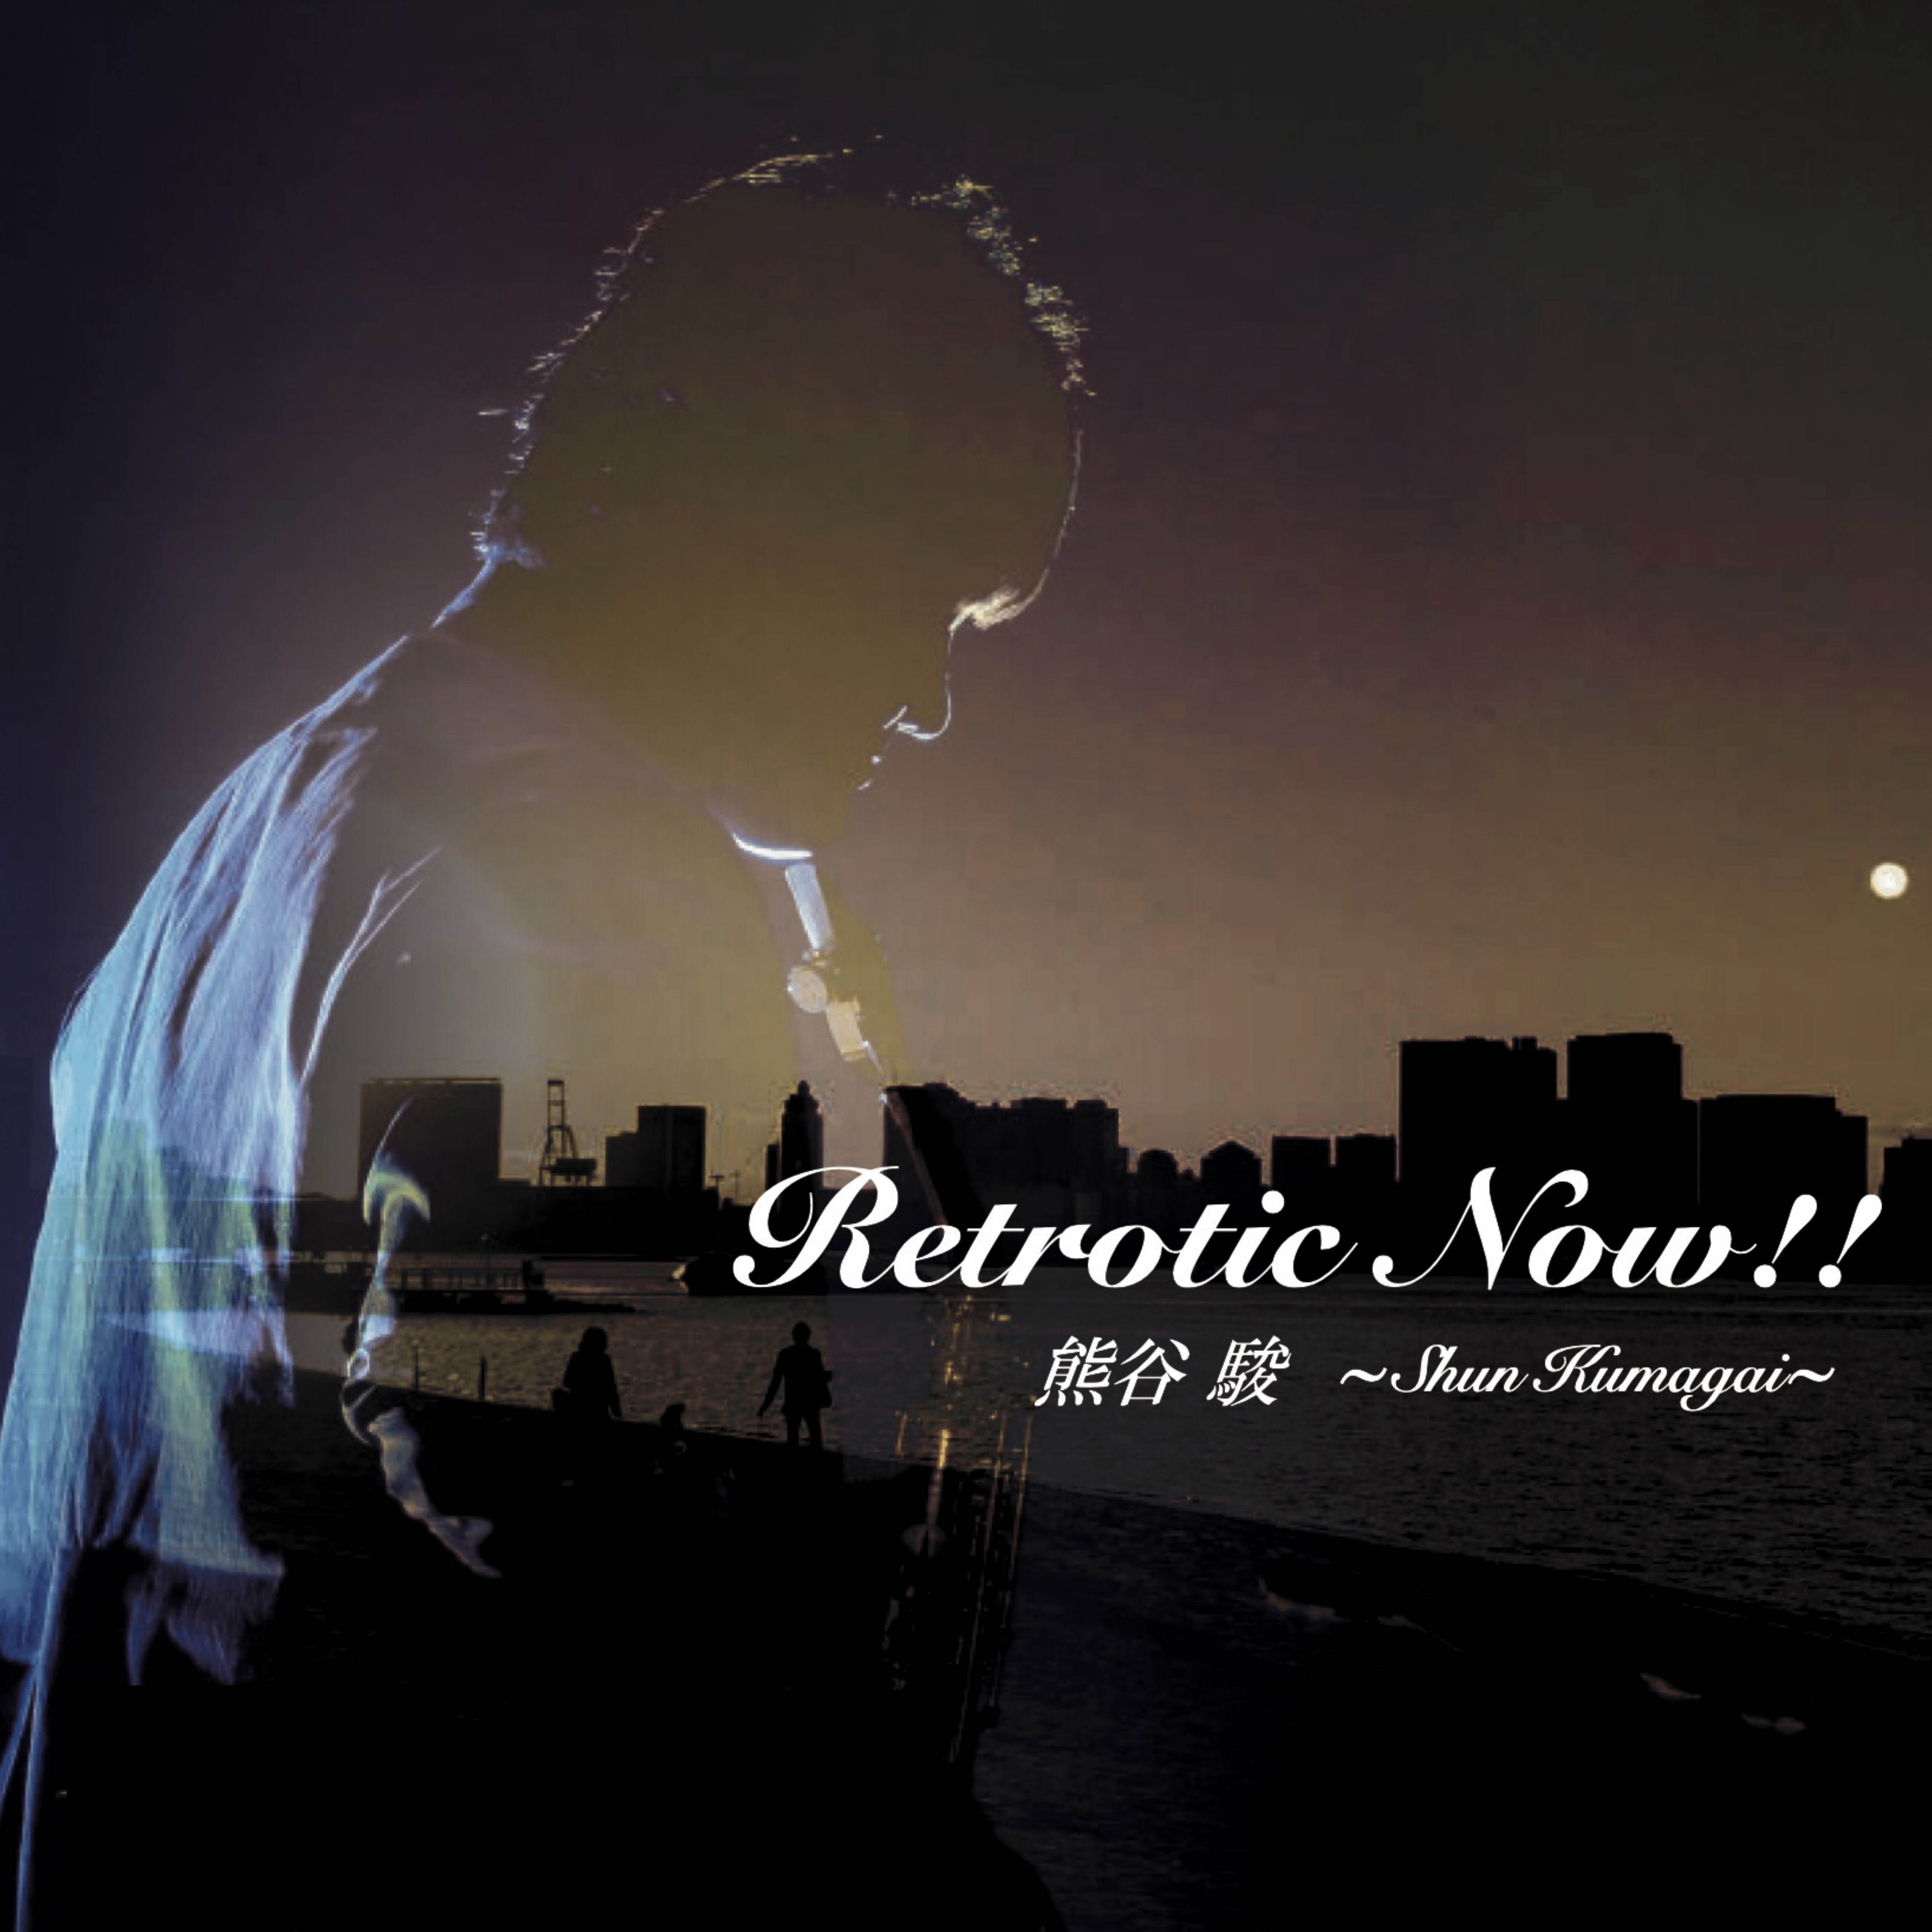 『11月7日リリース！』サックスプレイヤー熊谷駿3作目となる
オリジナルアルバム「Retrotic Now!!」が発売開始！